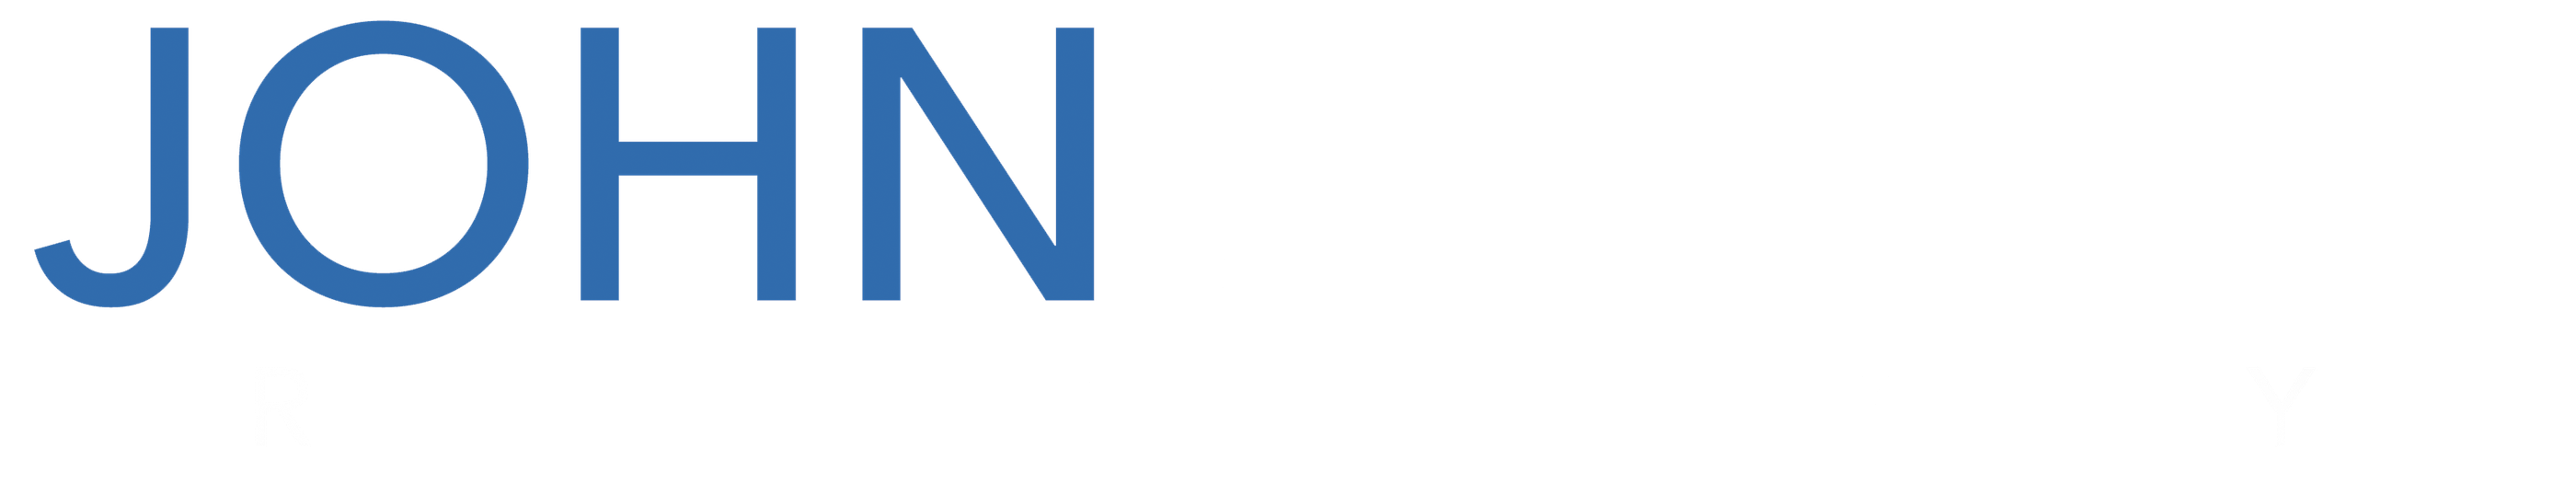 John Yoder Realty logo